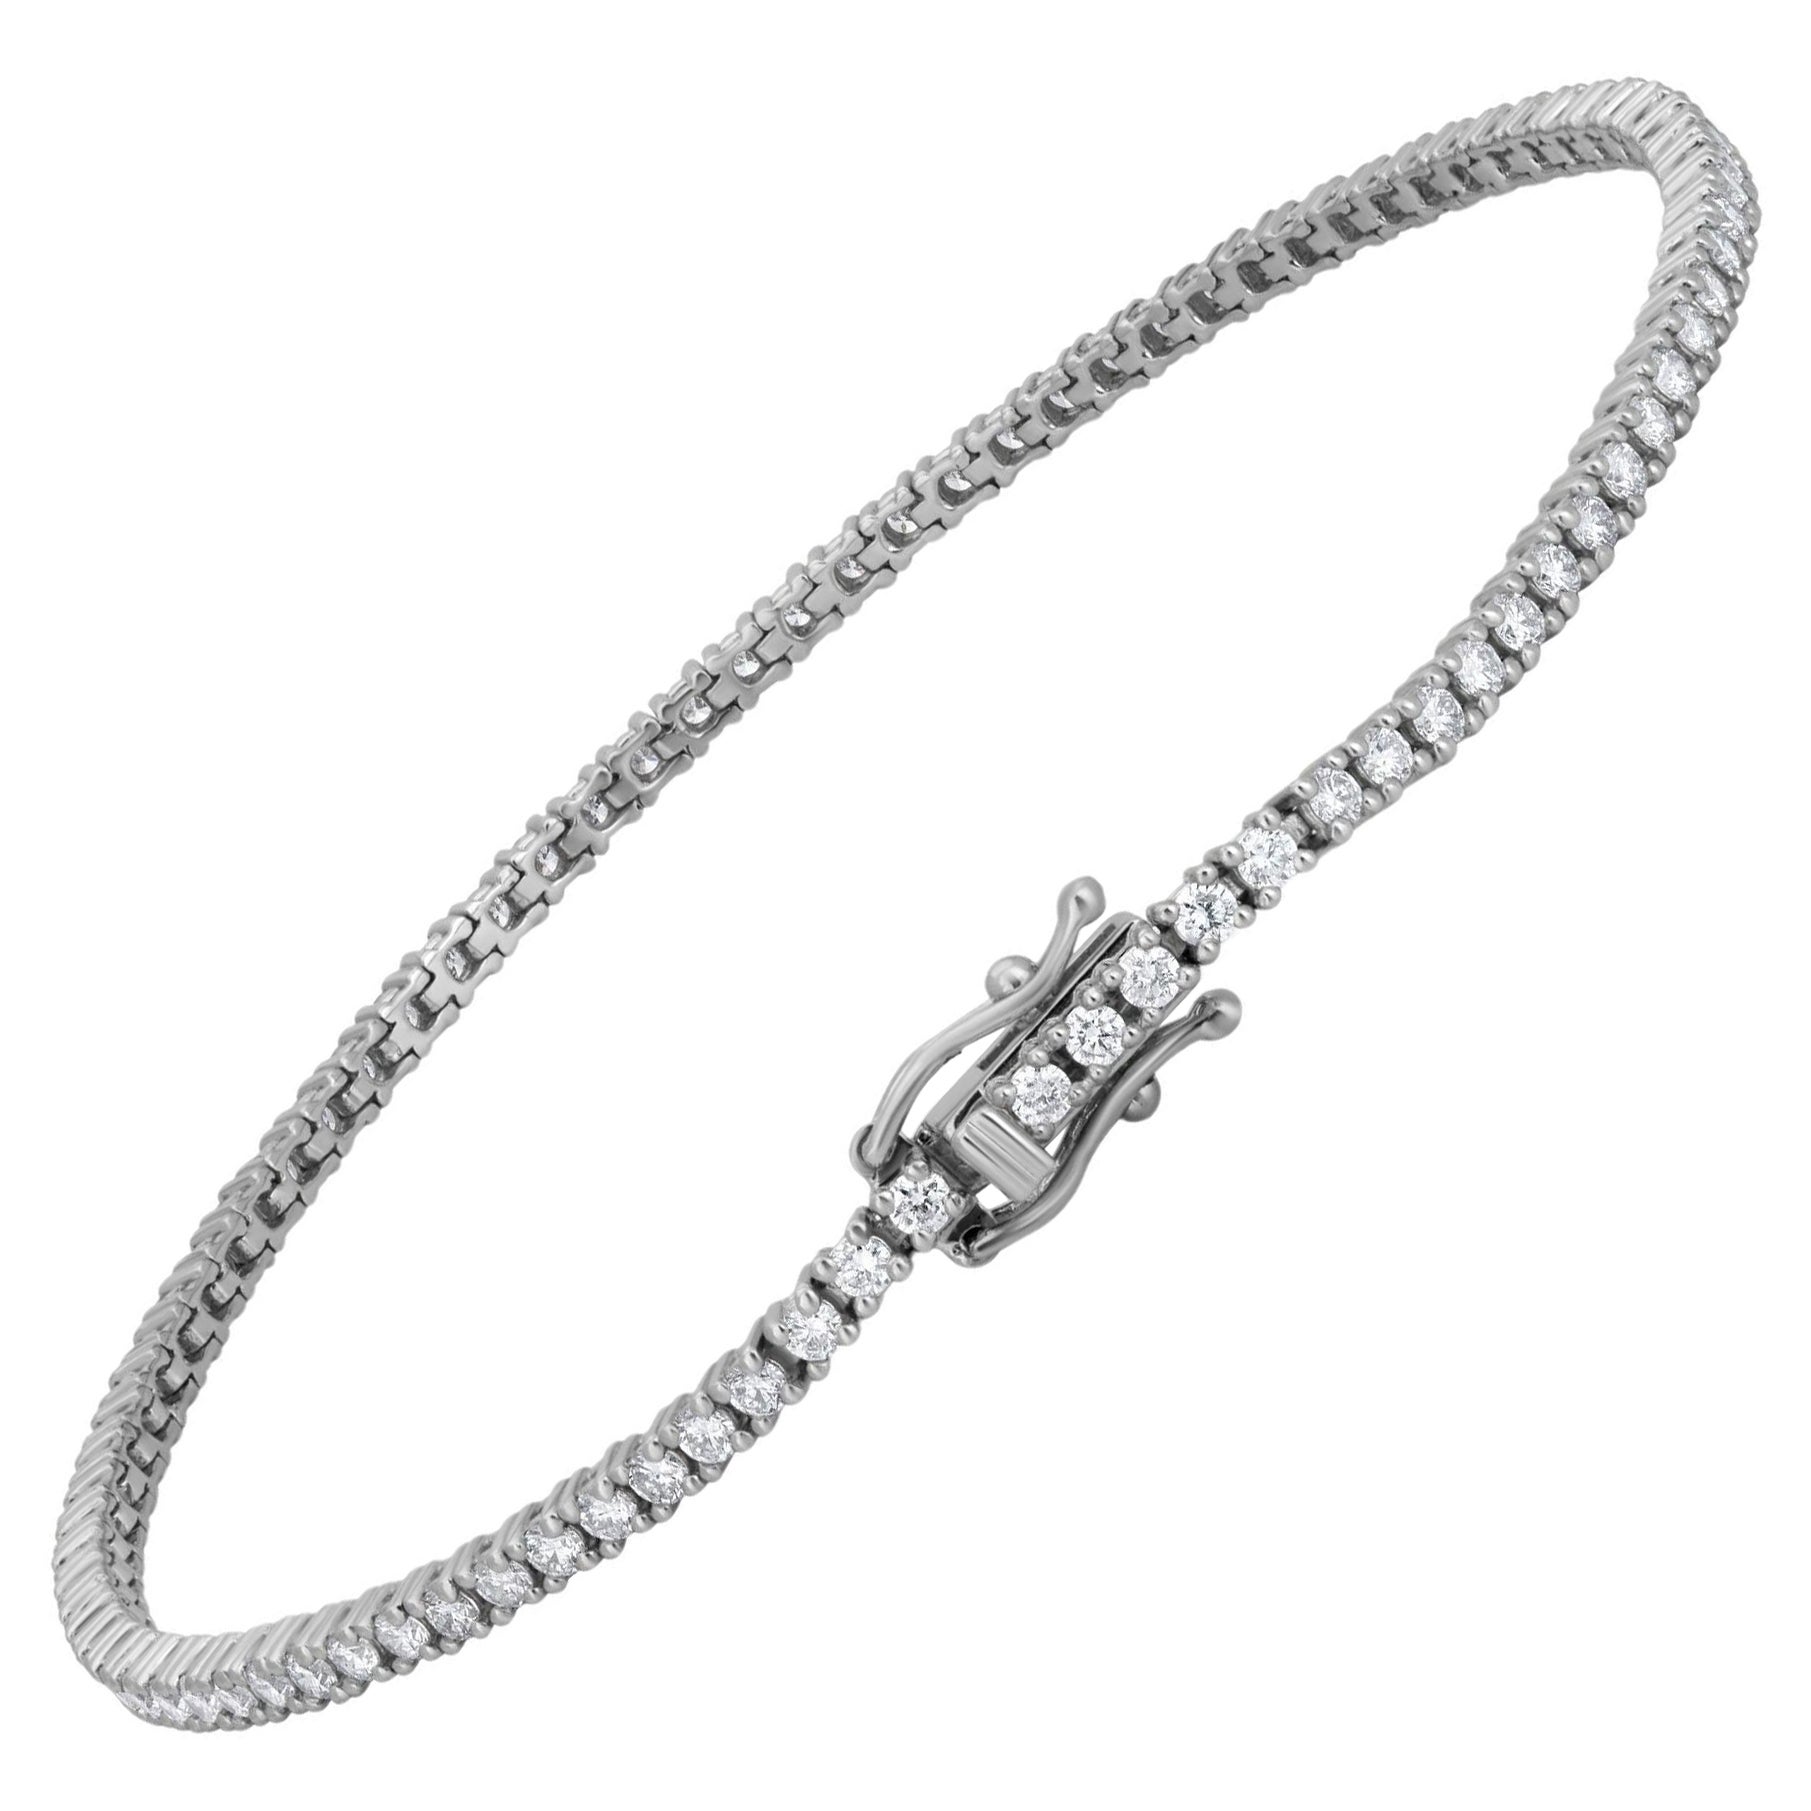 Luxle 1.6cttw. Round Diamond Tennis Bracelet in 18k White Gold